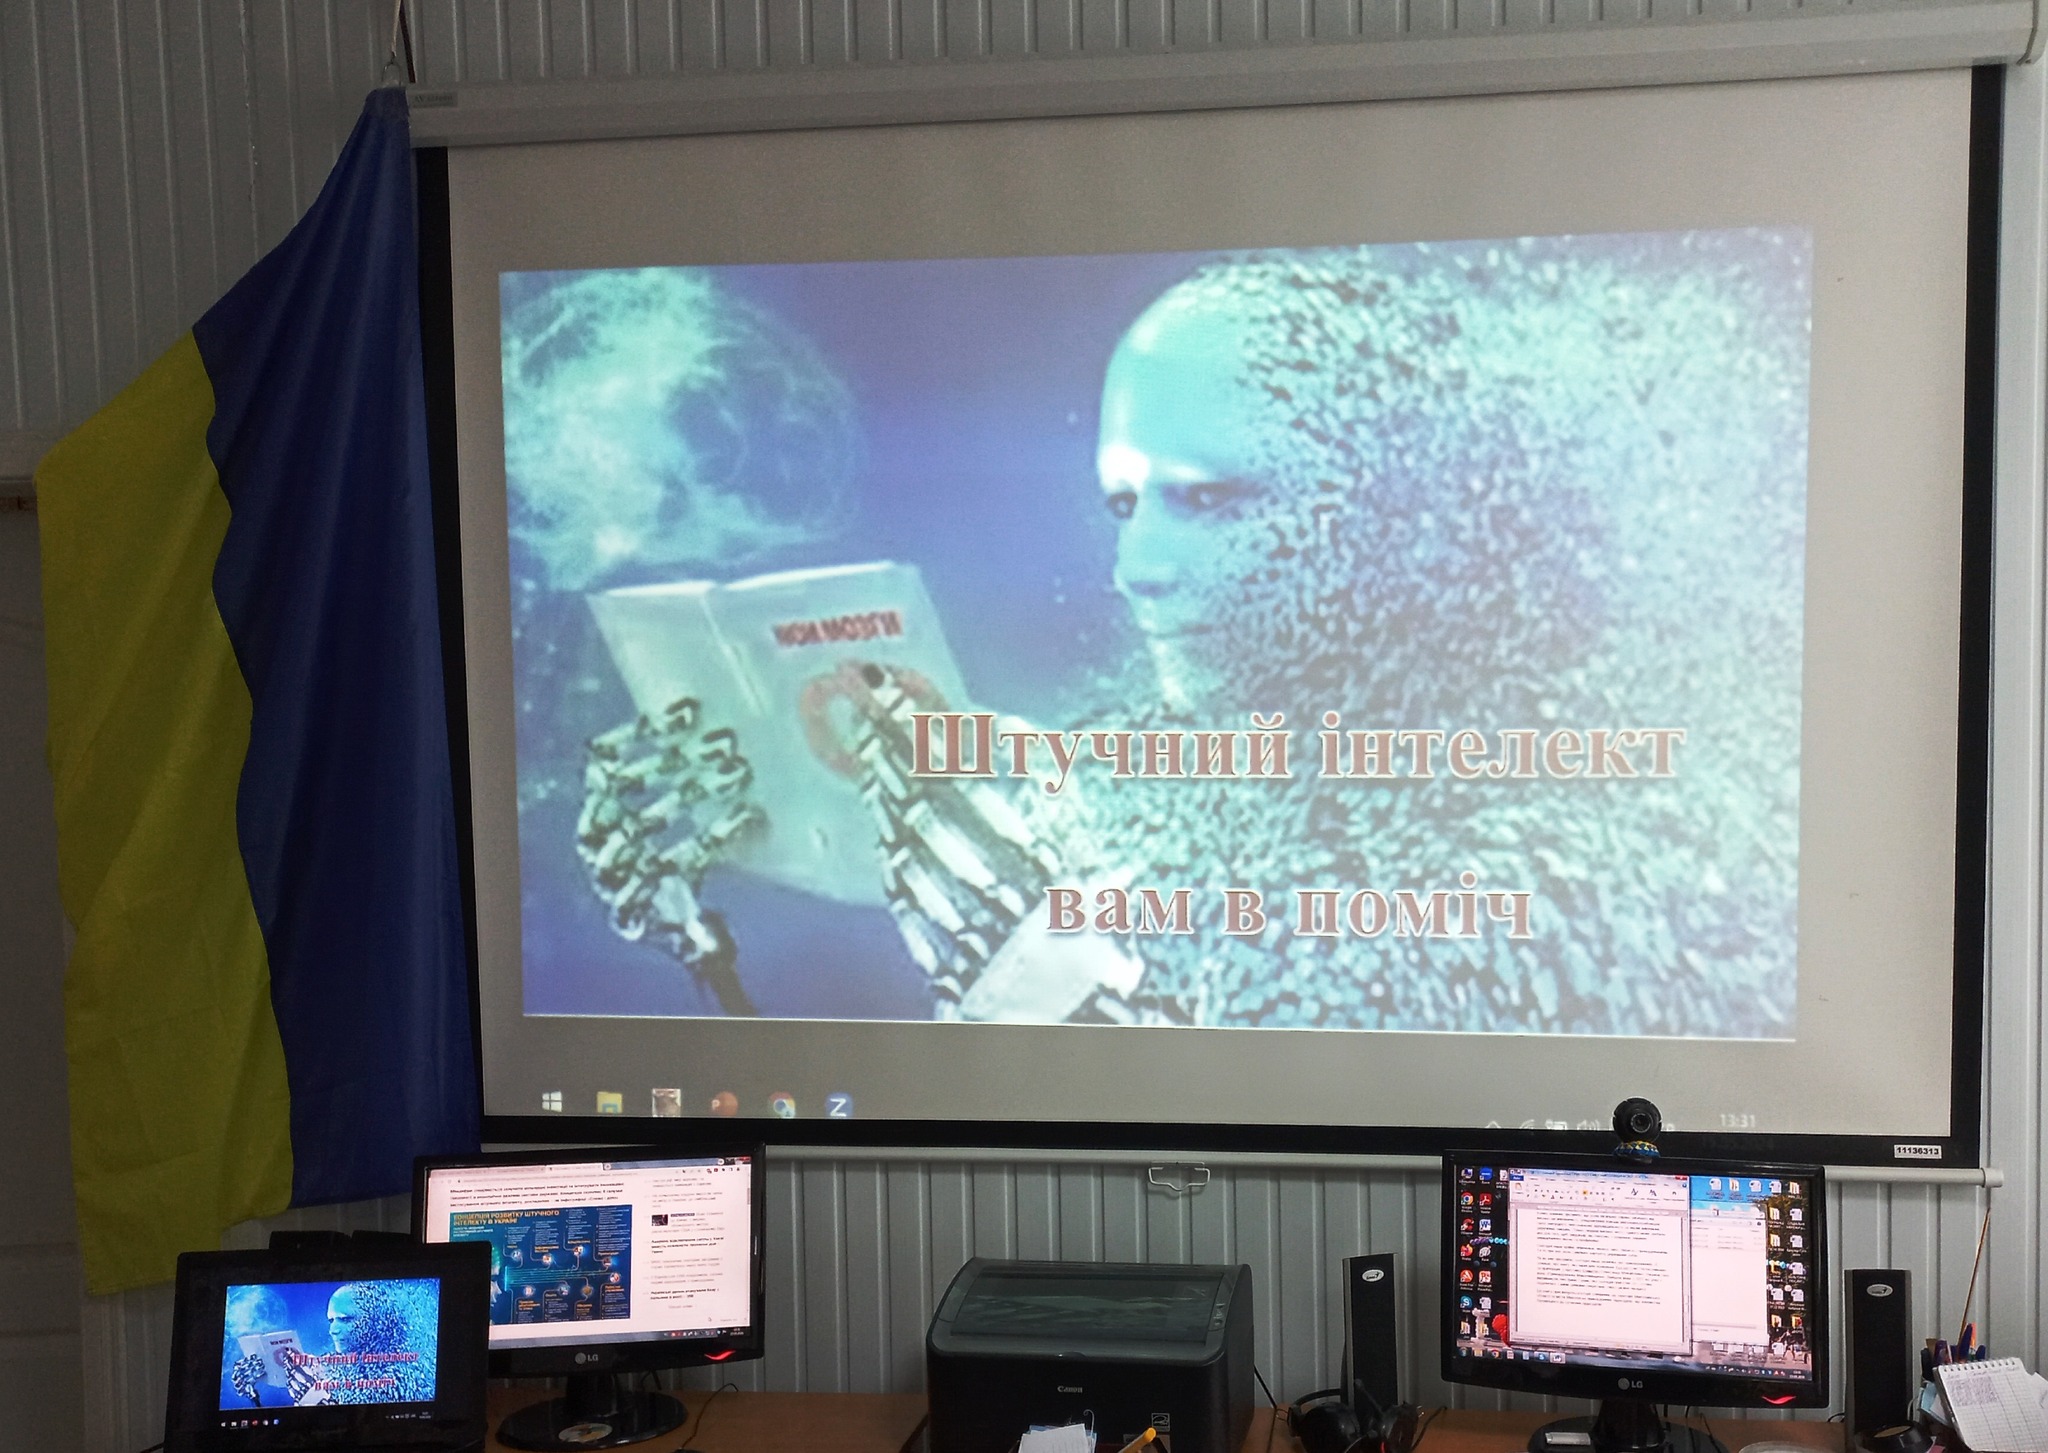 Загальносистемна акція «Штучний інтелект вам в поміч!» була проведена в Центральній бібліотеці ім. М.Л. Кропивницького та її філіях